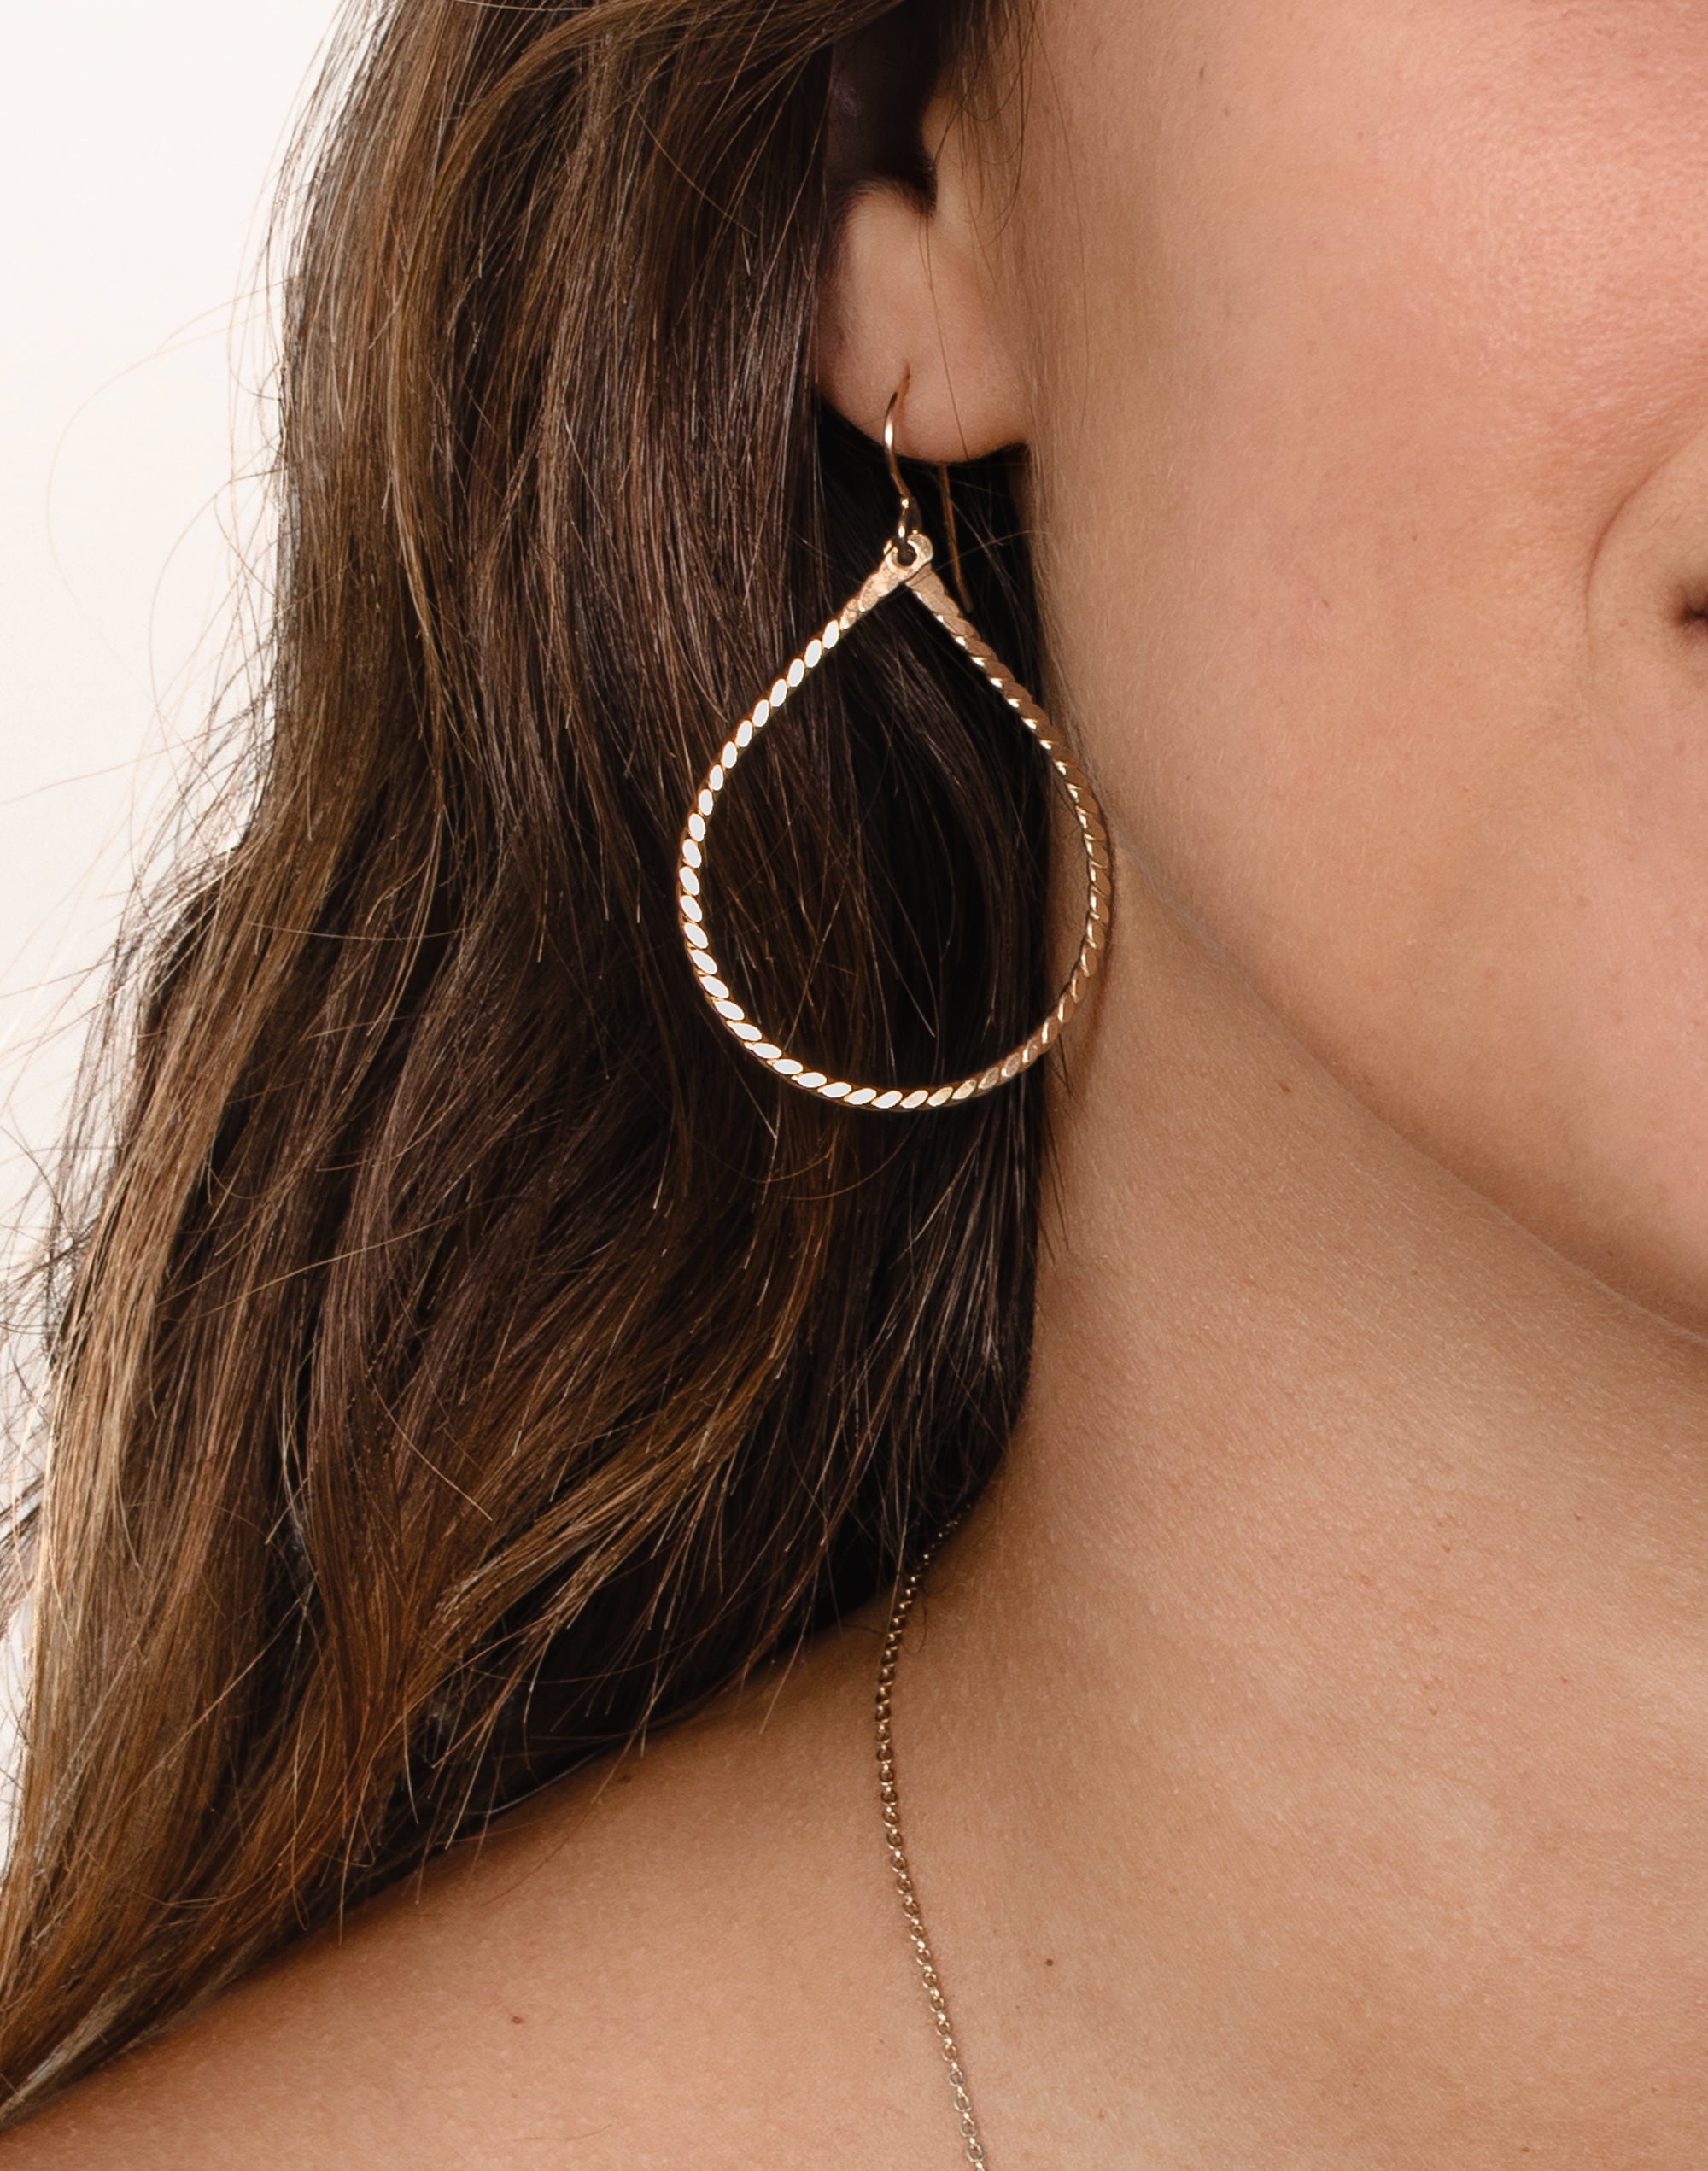 In Situ Jewelry 14k Gold-Filled Carmen Earrings